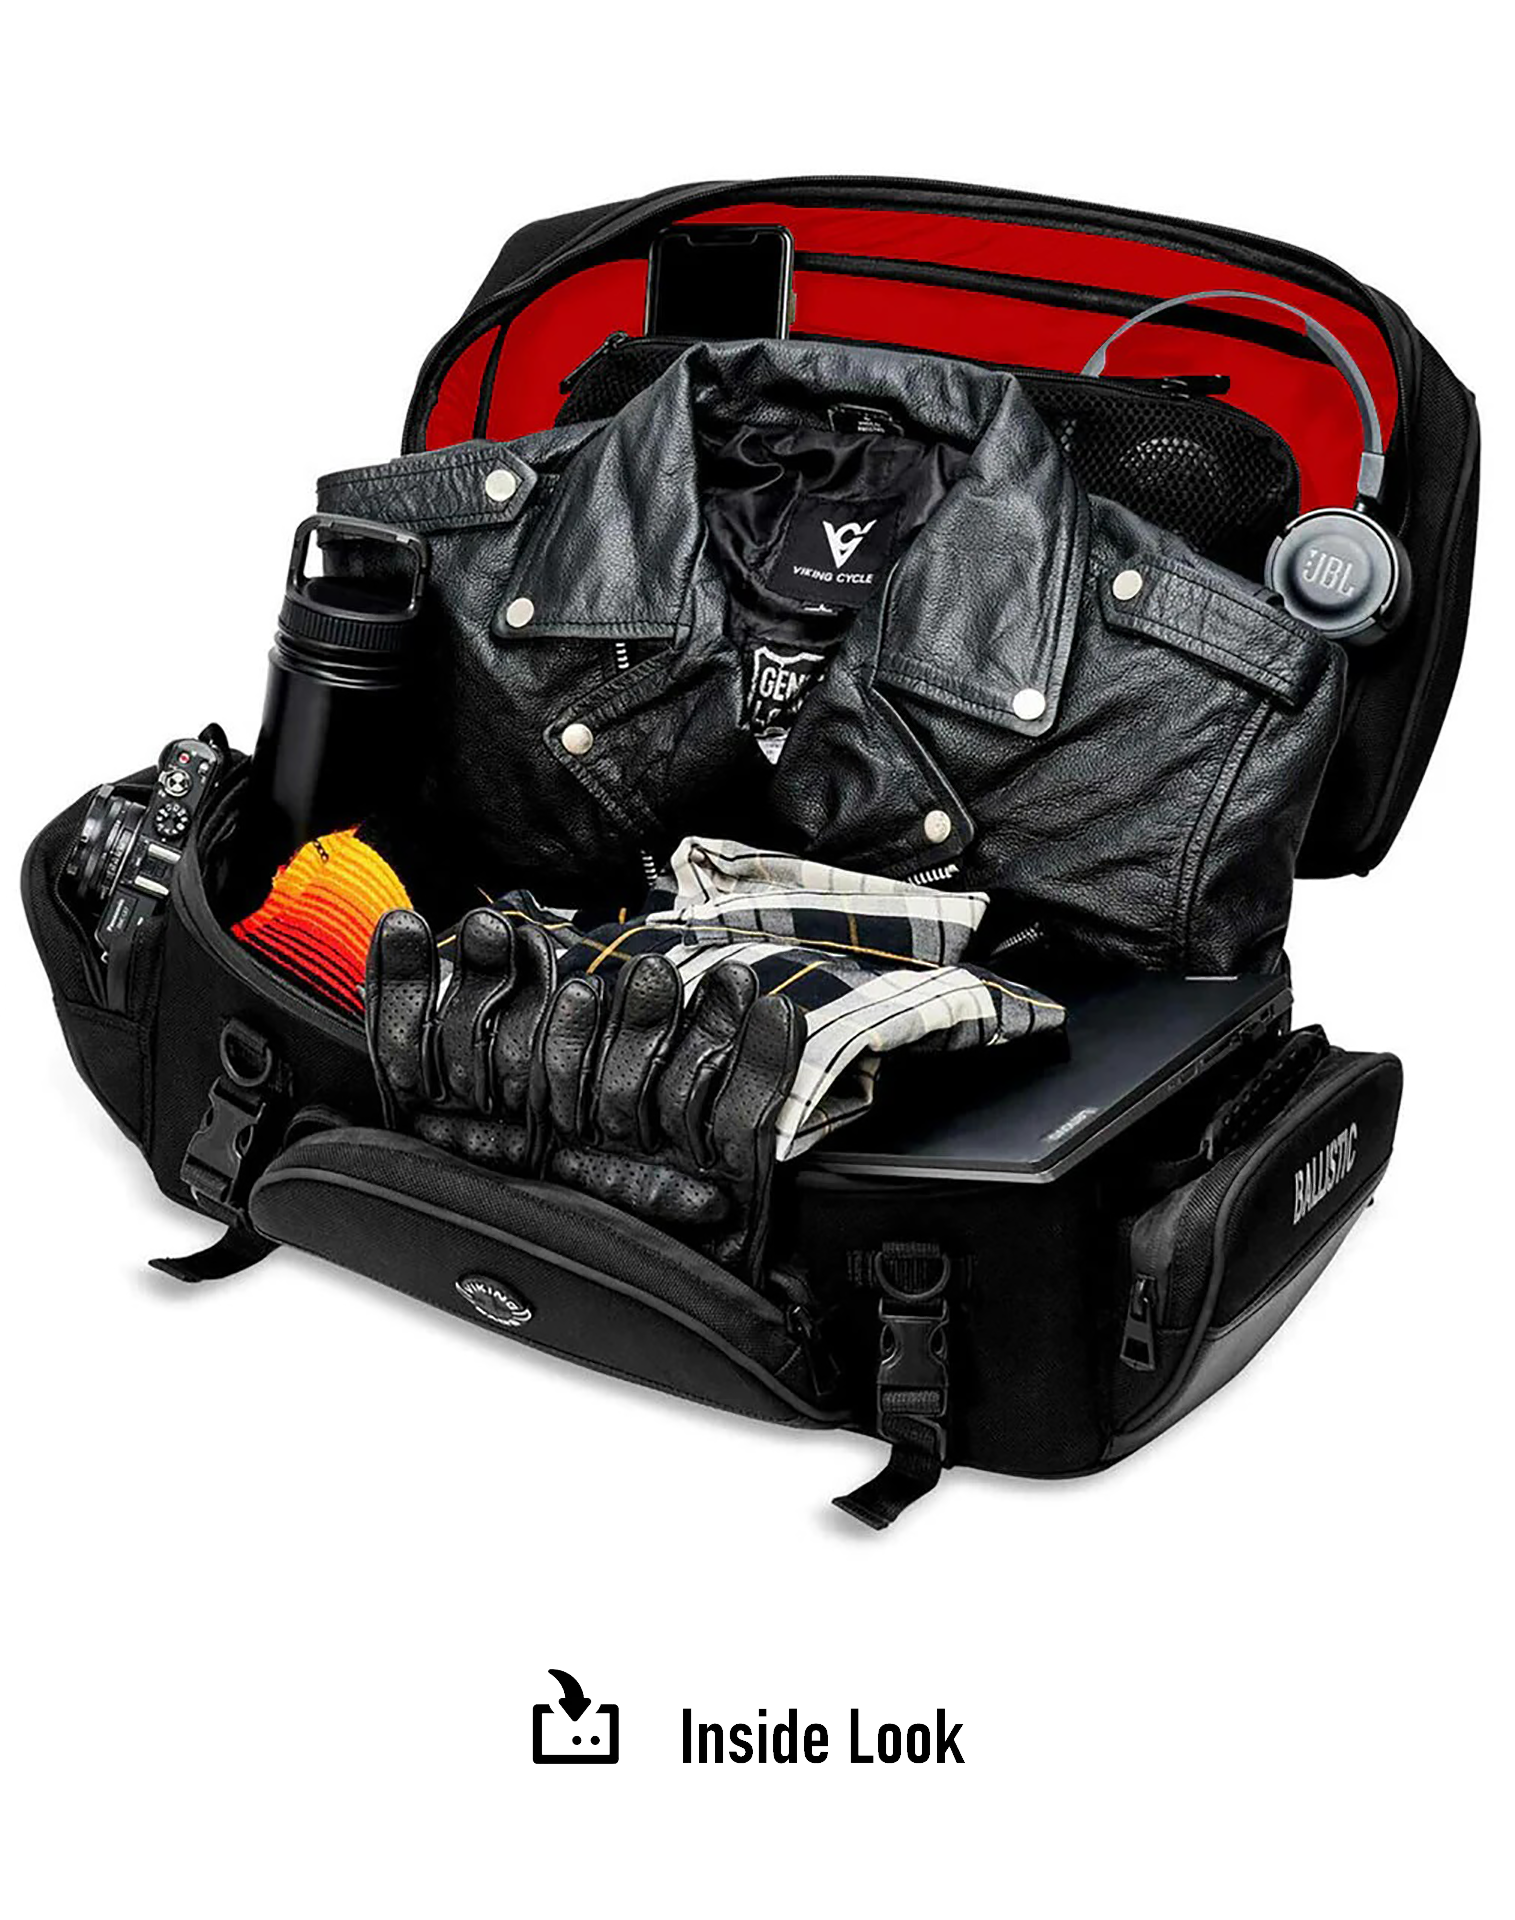 42L - Voyage Elite XL Triumph Motorcycle Sissy Bar Bag